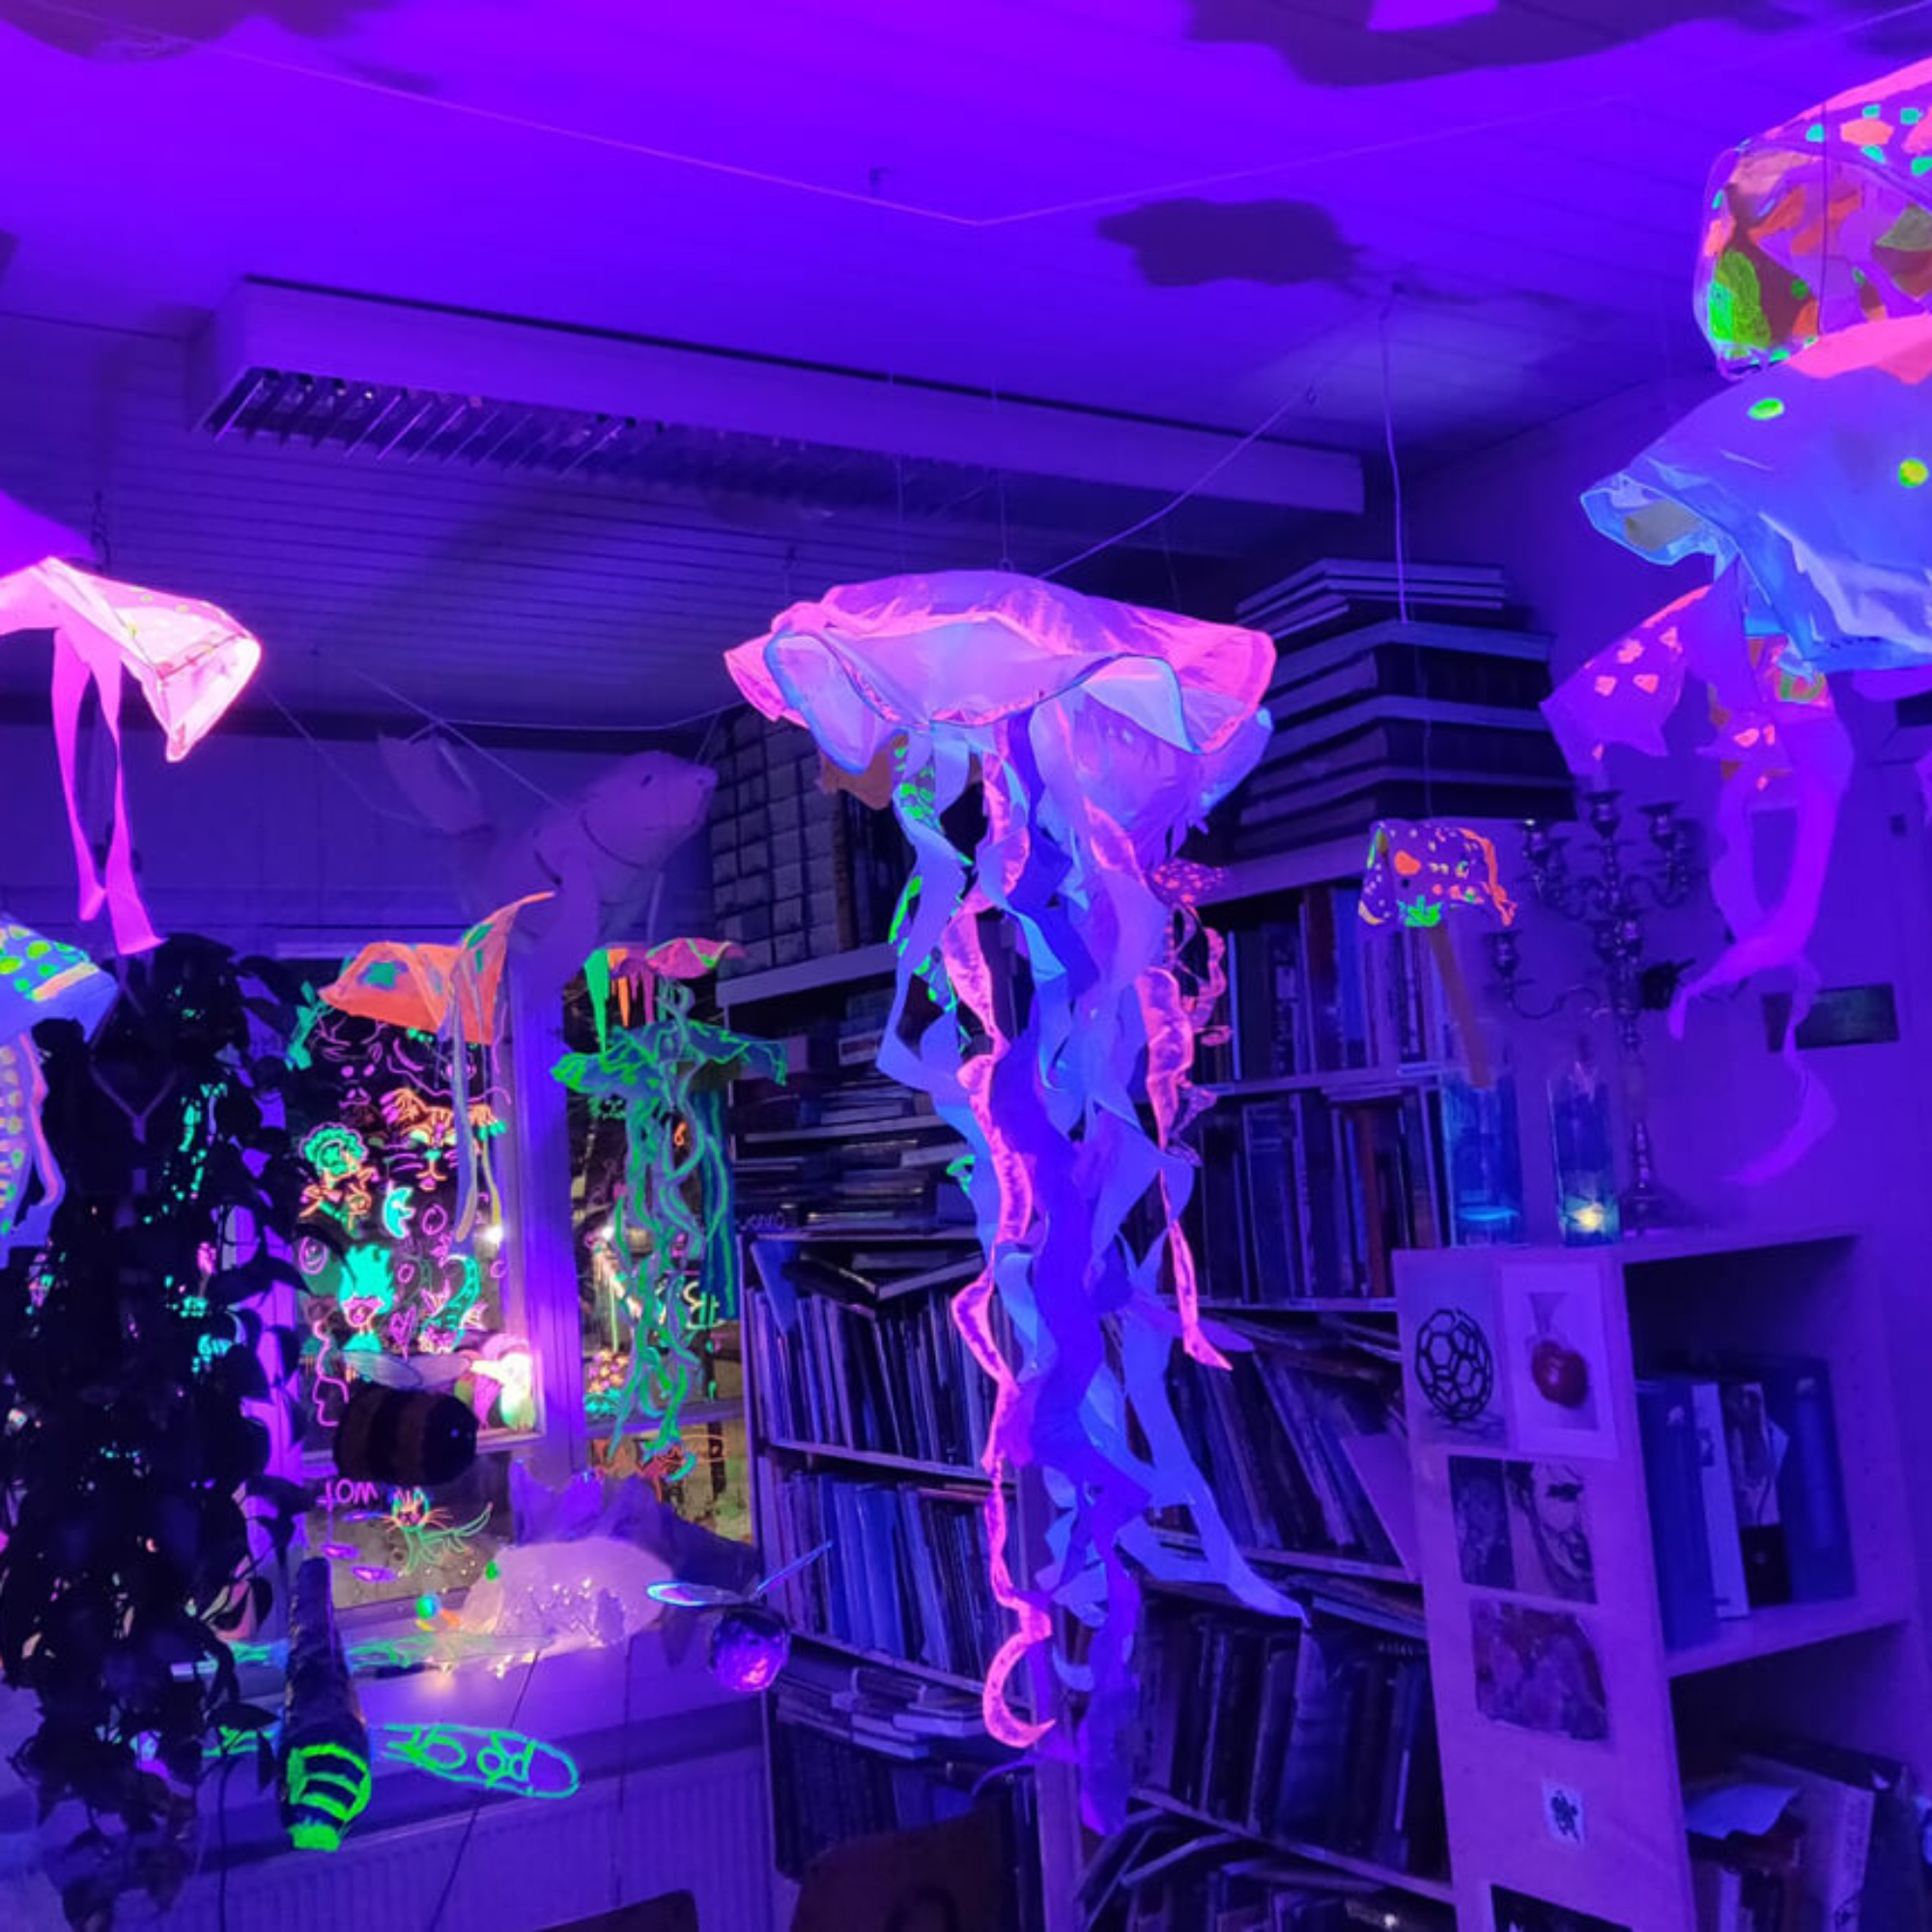 Uv-valolla valaistuja paperisia meduusan näköisiä teoksia roikkumassa huoneen katosta.